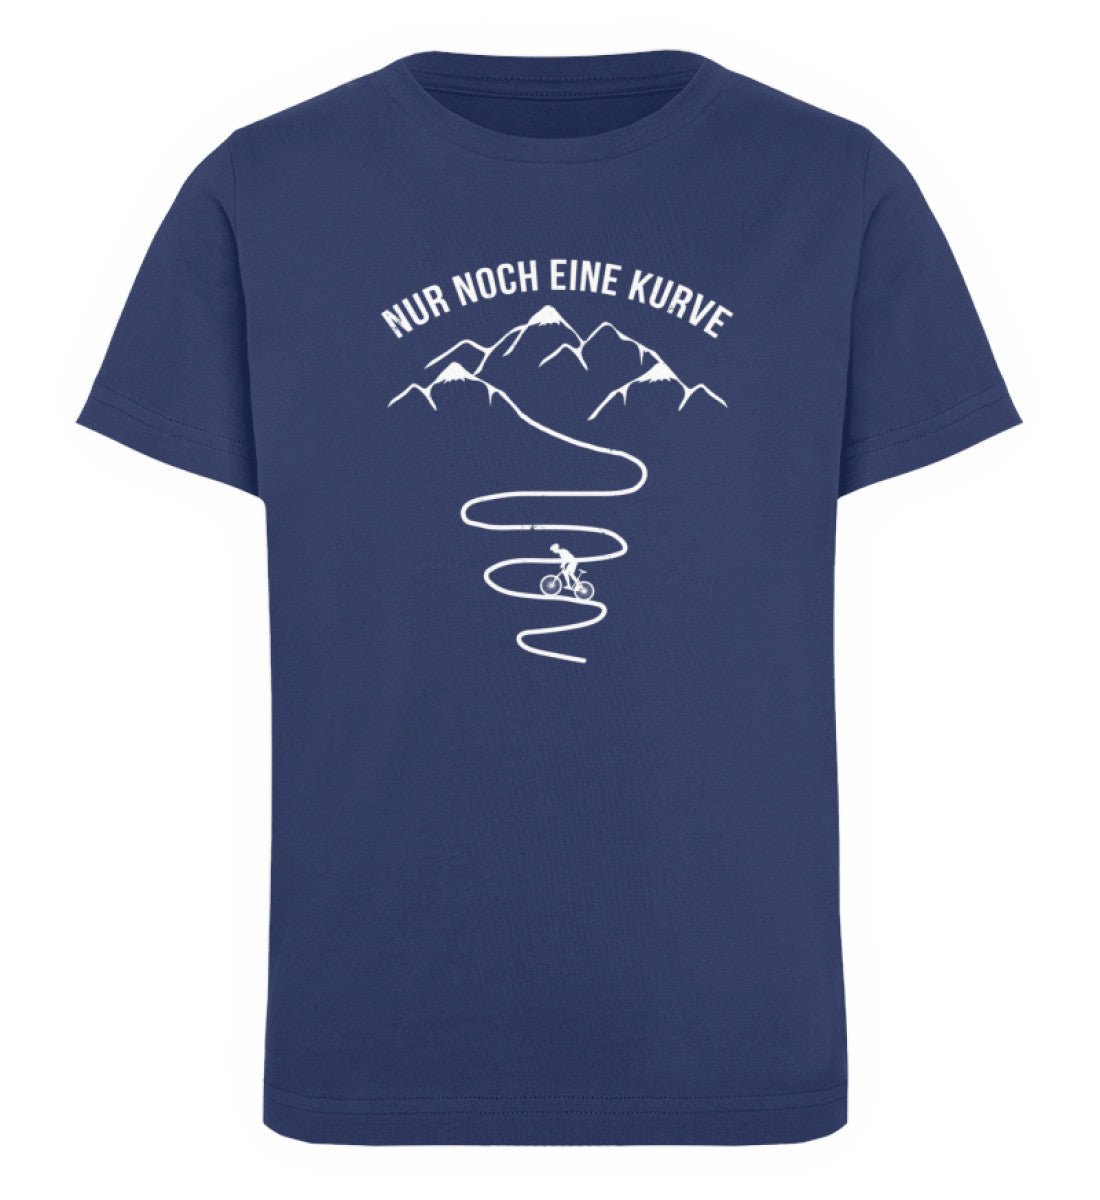 Nur noch eine Kurve und Radfahrer - Kinder Premium Organic T-Shirt fahrrad mountainbike Navyblau